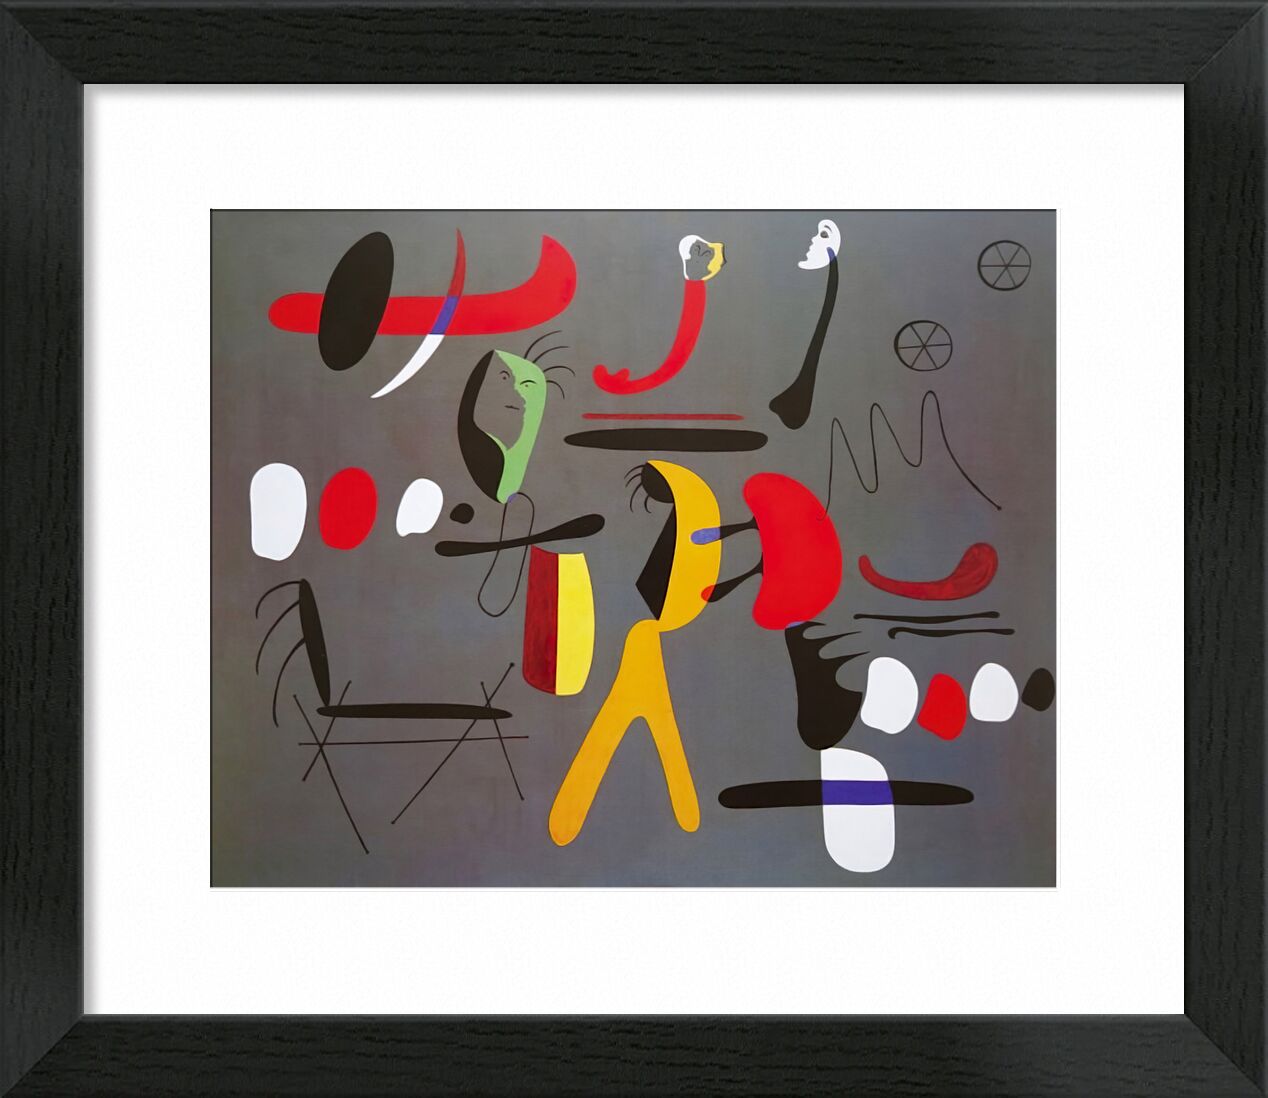 Collage Painting - Joan Miró von Bildende Kunst, Prodi Art, Formen und Farben, Zeichnung, abstrakt, Collage, Malerei, Joan Miró